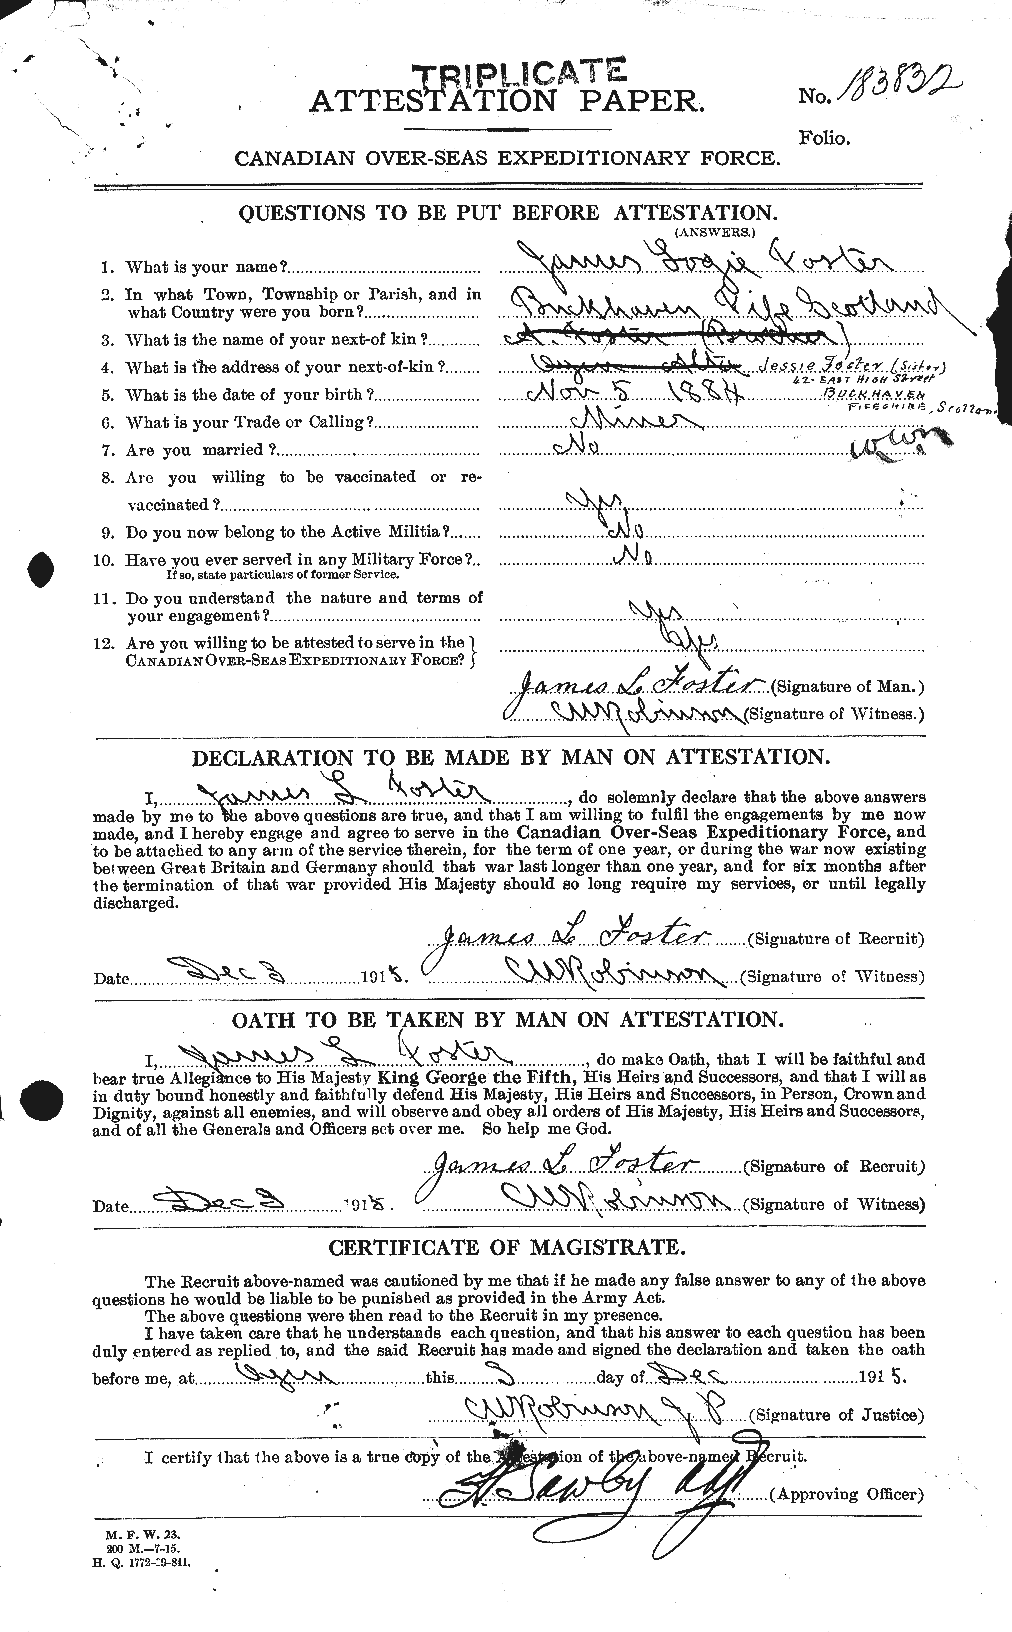 Dossiers du Personnel de la Première Guerre mondiale - CEC 333314a